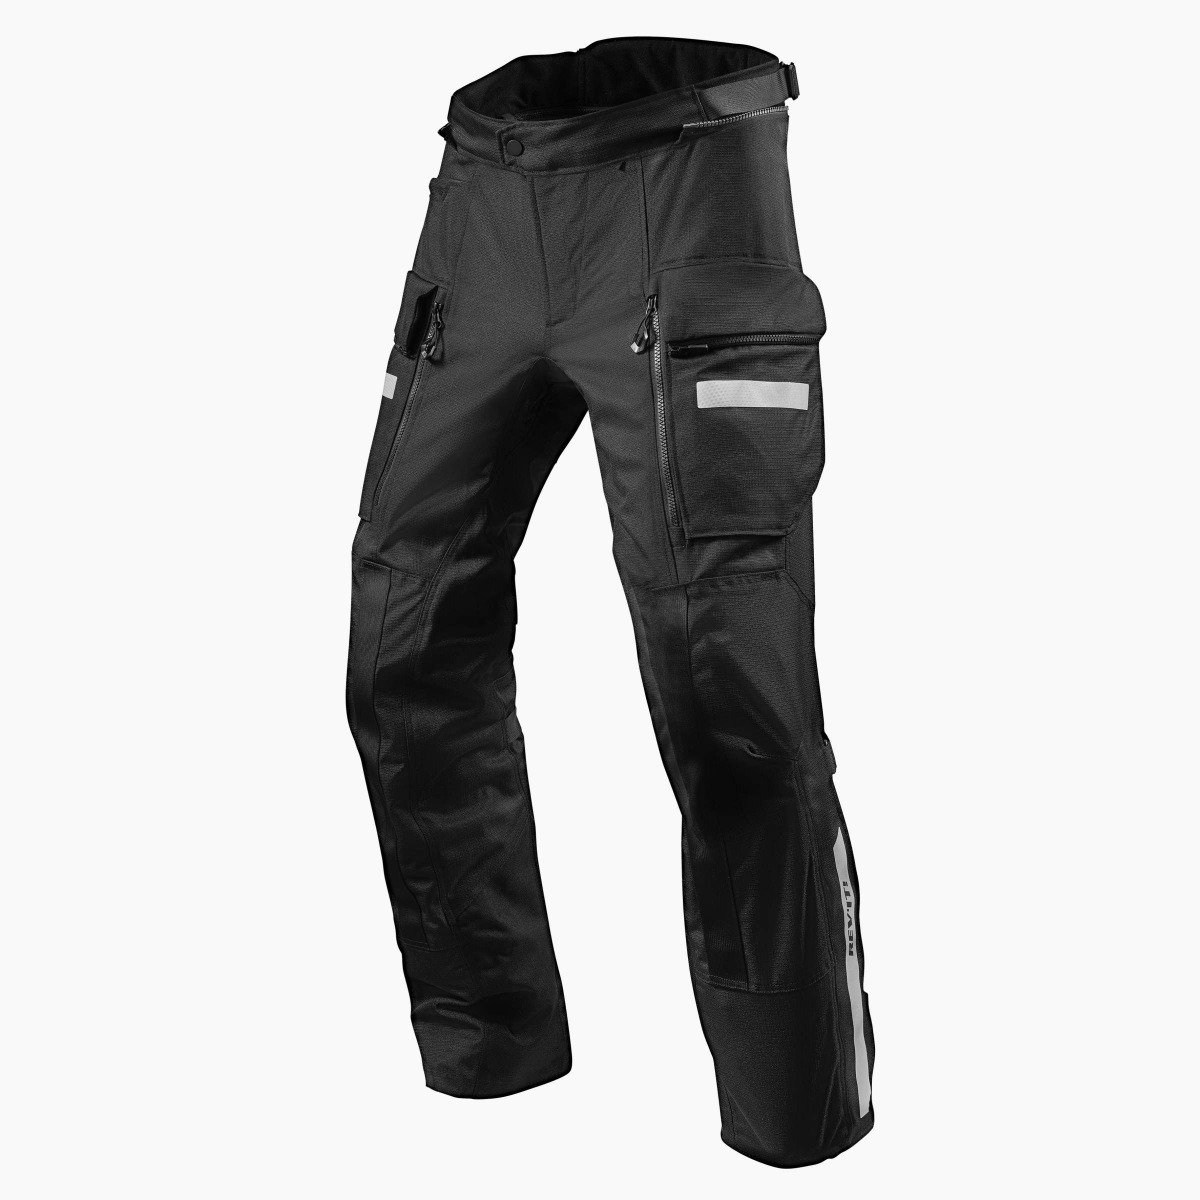 Image of REV'IT! Sand 4 H2O Short Black Motorcycle Pants Size L EN